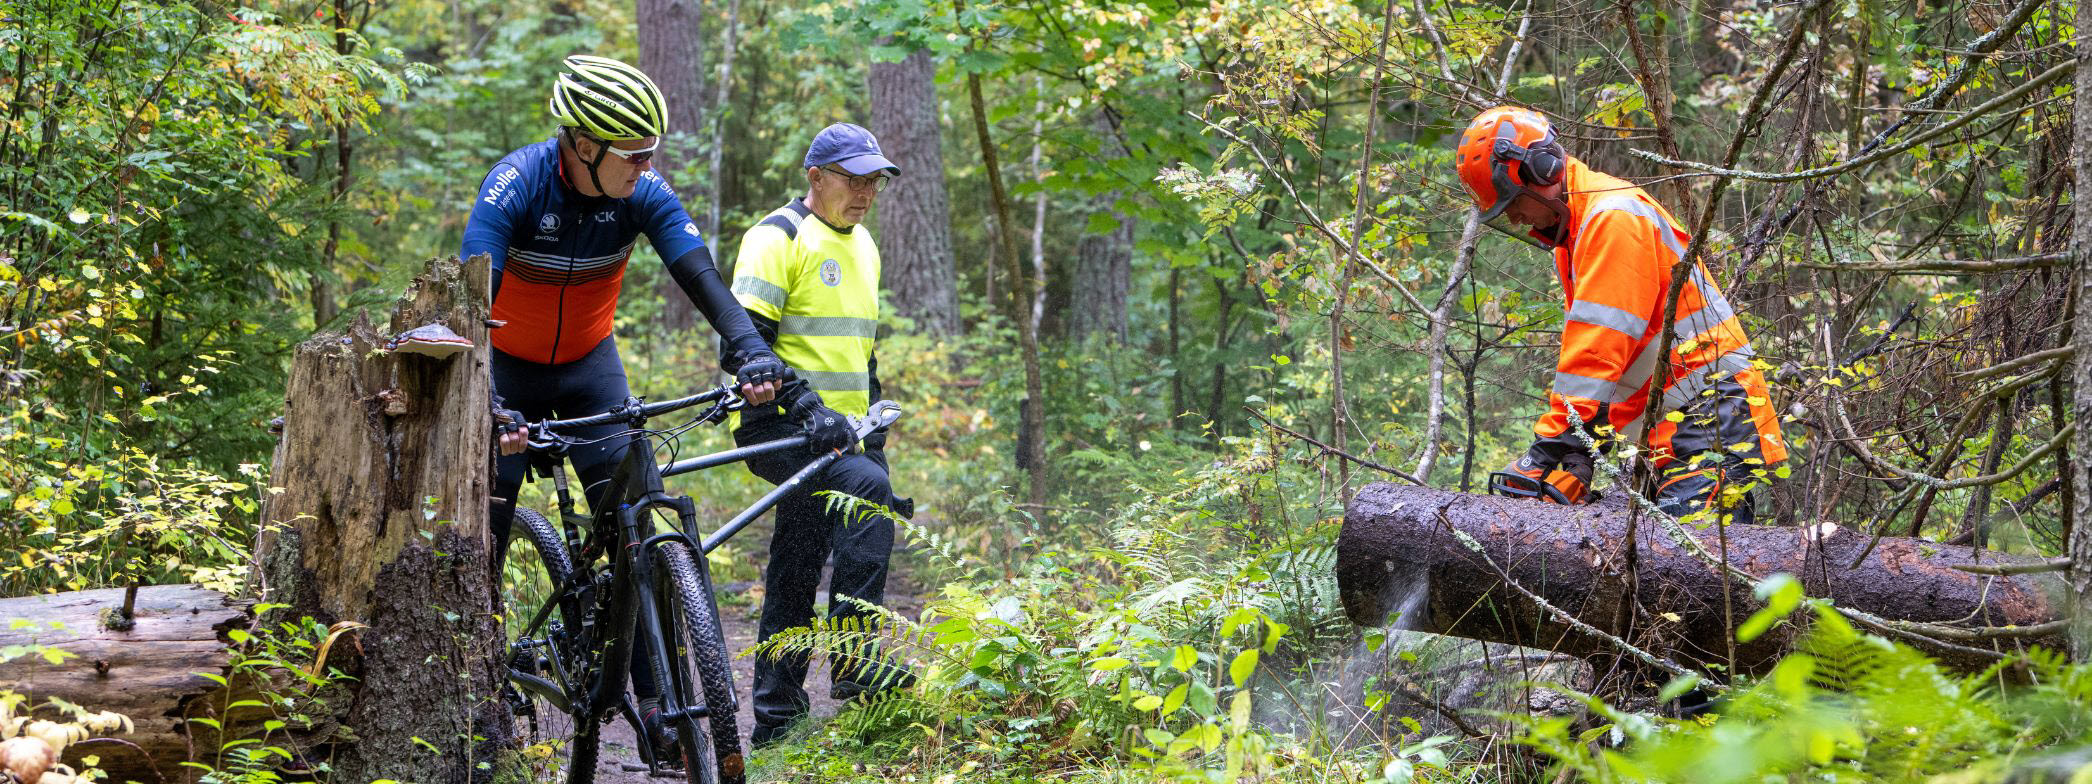 En cyklist, en vandrare och en skogsarbetare ute i skogen